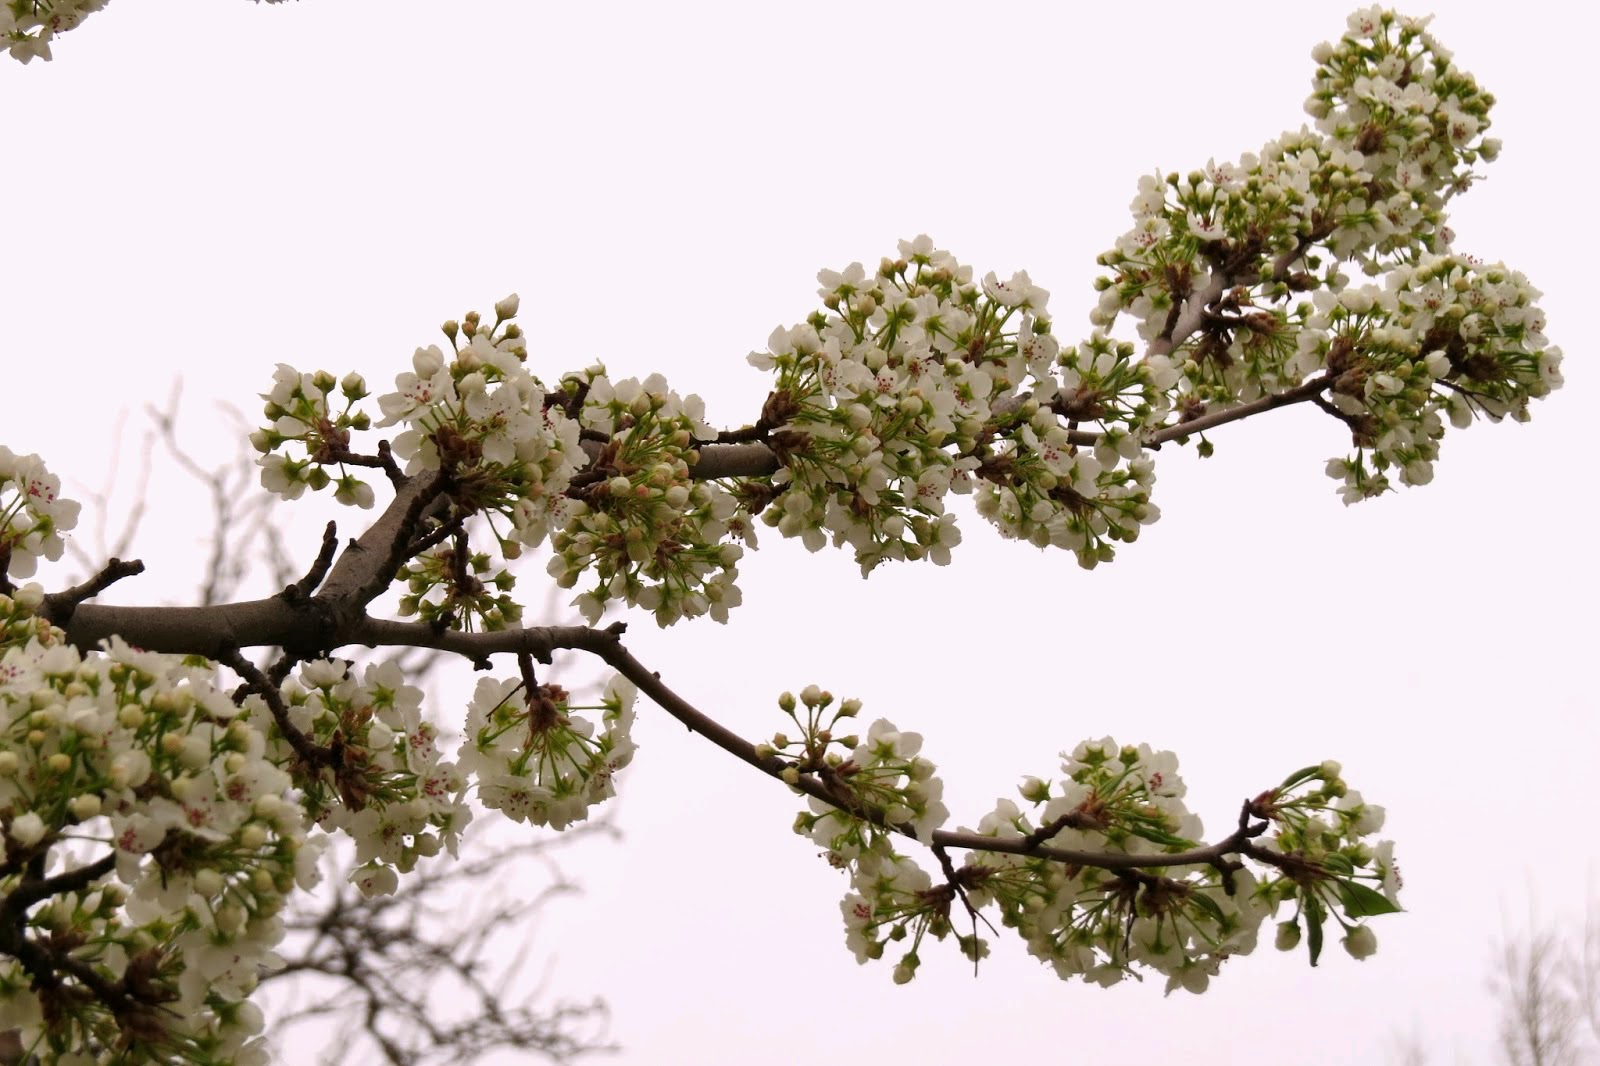 Blooming Pear Tree